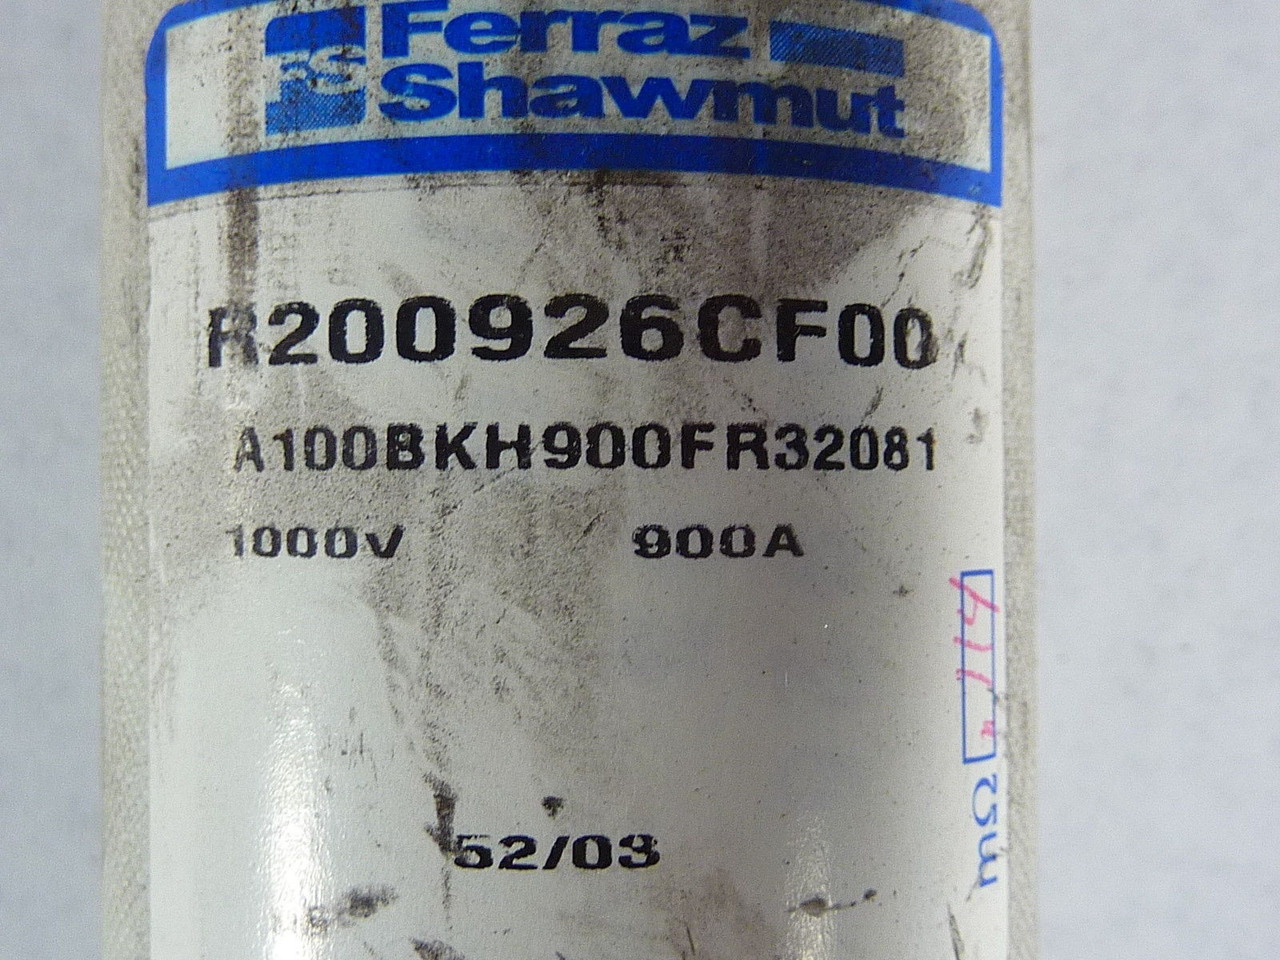 Ferraz Shawmut R200926CF00 Fuse 900A 1000V USED